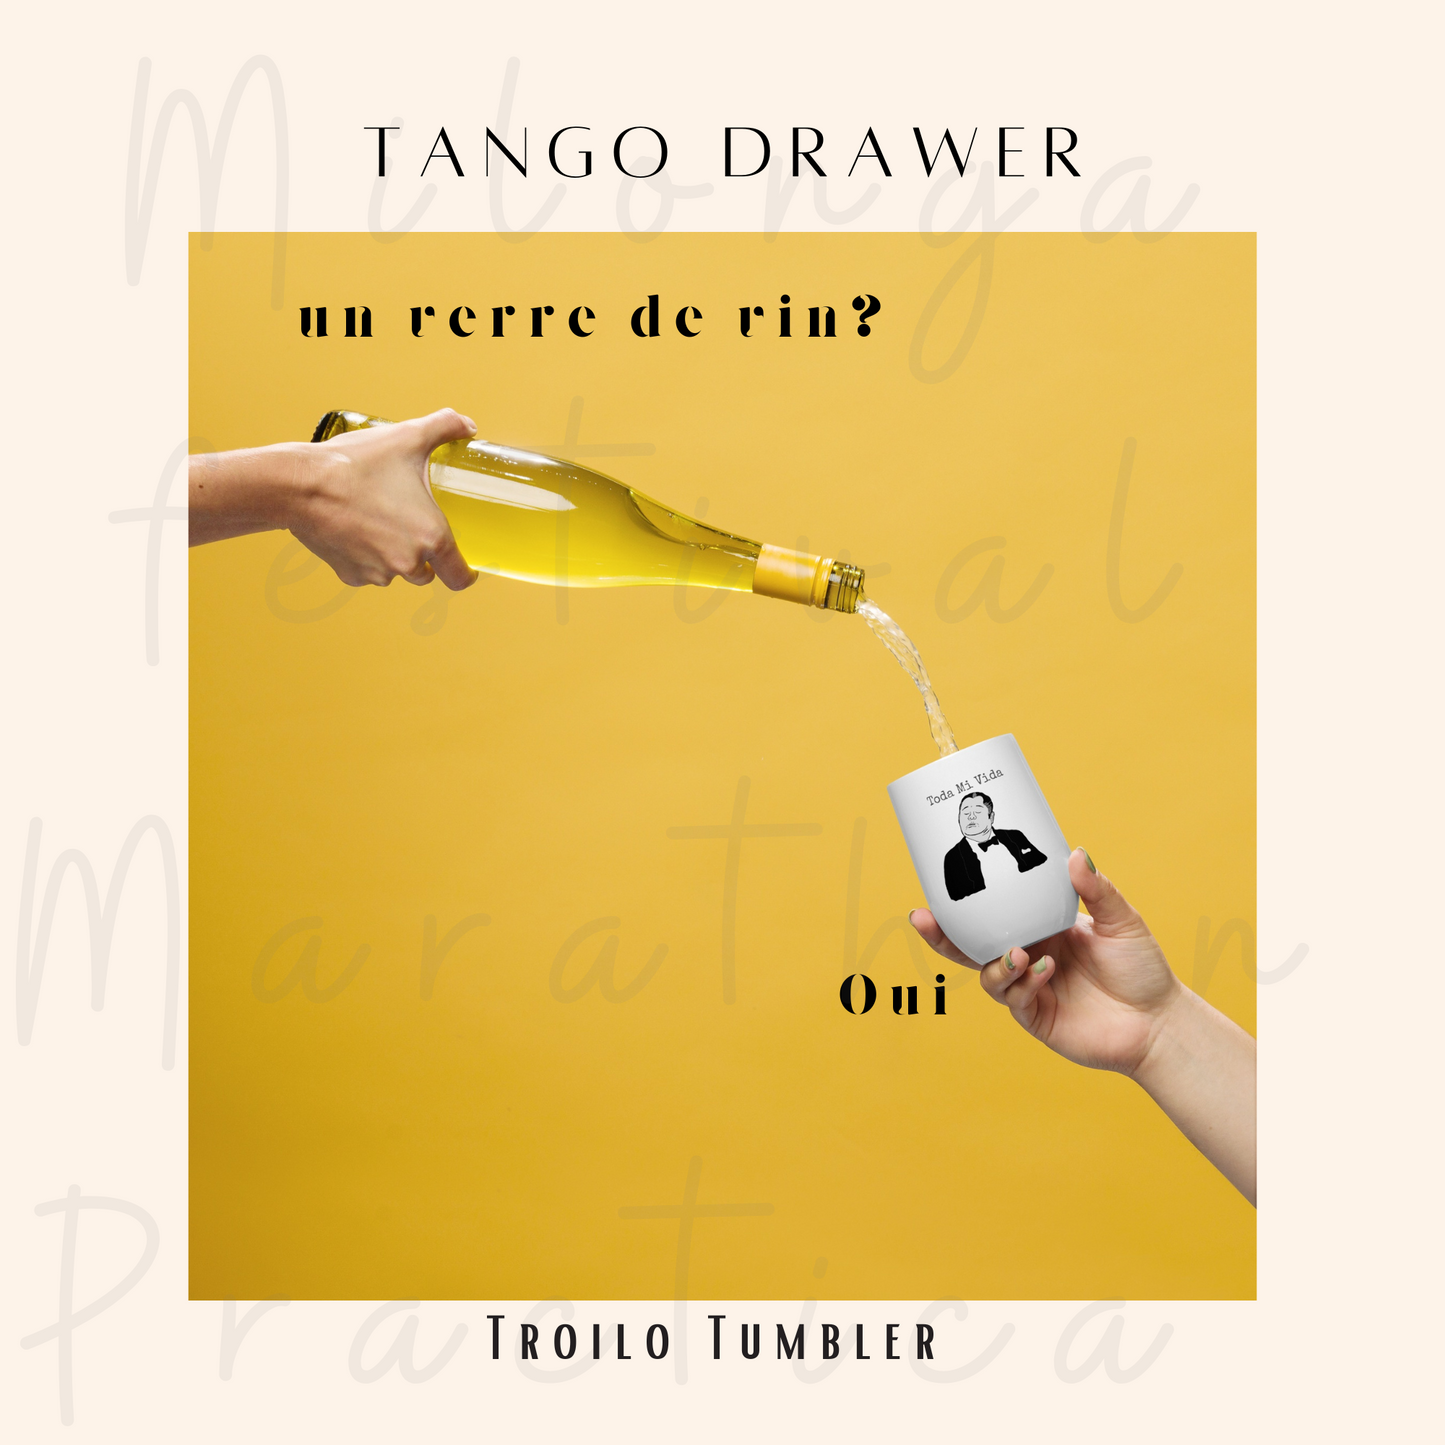 Tango Orchestras (Troilo, Di Sarli, D'Arienzo, Pugliese, Biagi, Tanturi, Donato) Insulated Wine Tumbler